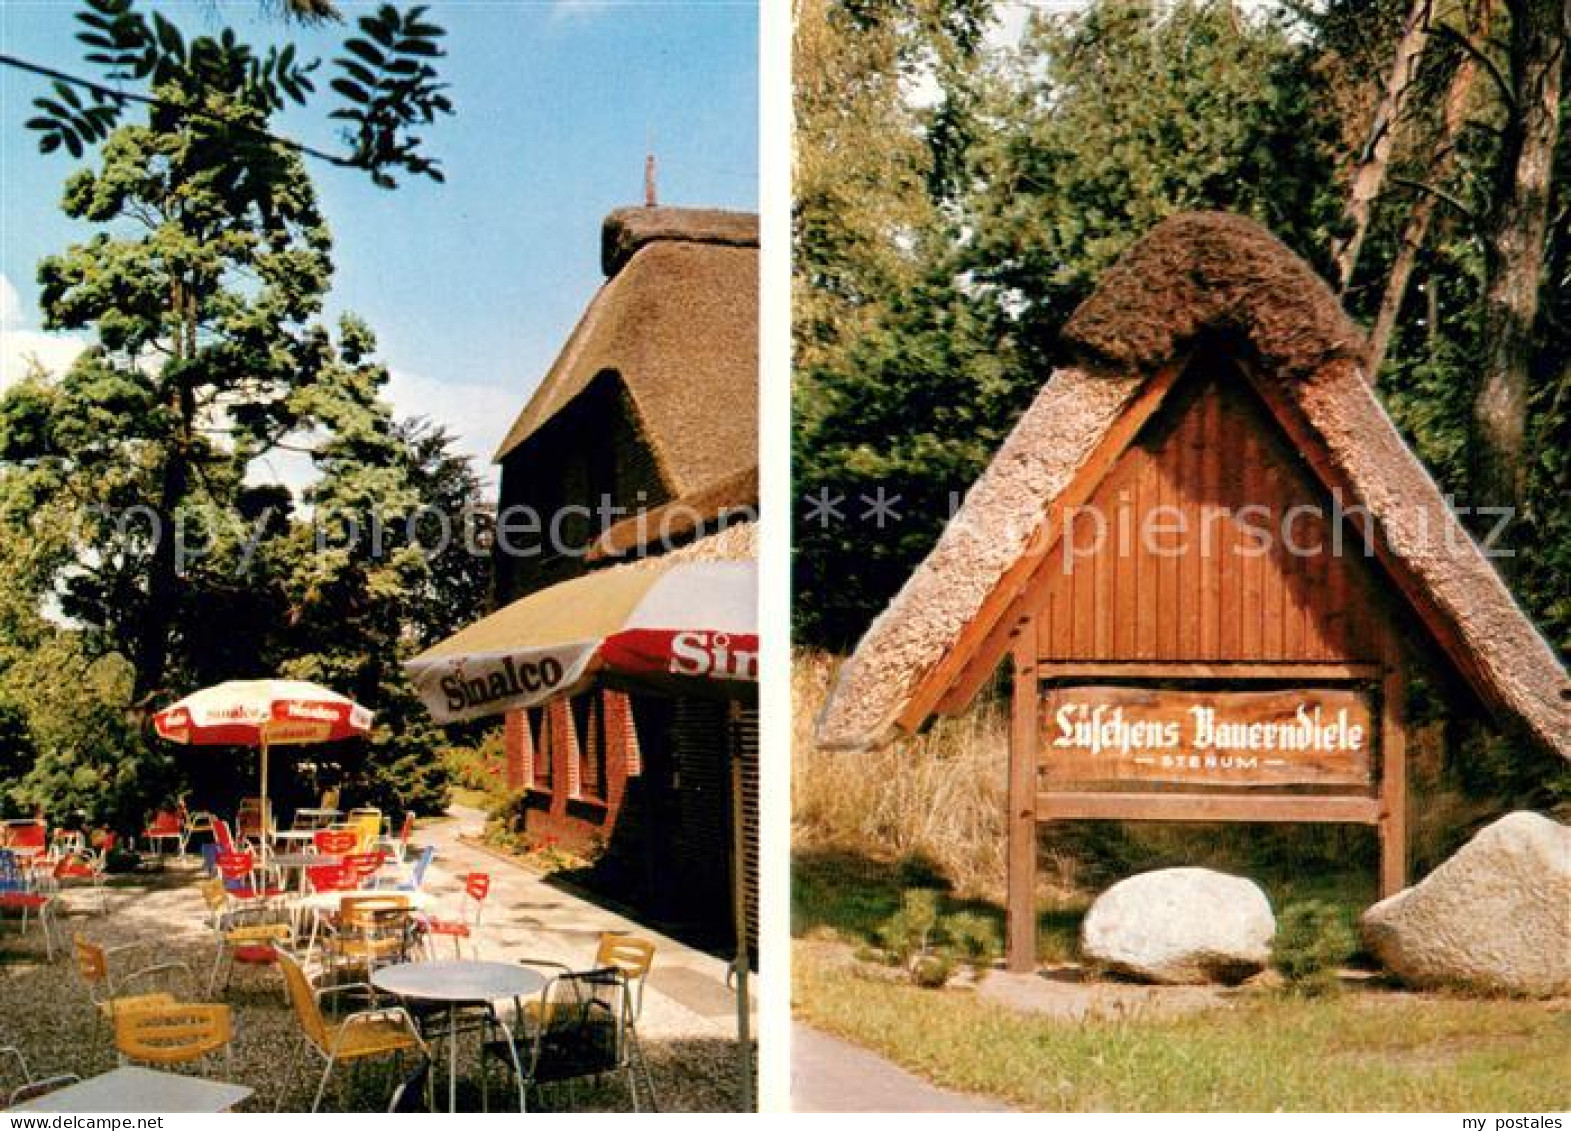 73642234 Schierbrok Lueschens Bauerndiele Restaurant Terrasse Schierbrok - Ganderkesee